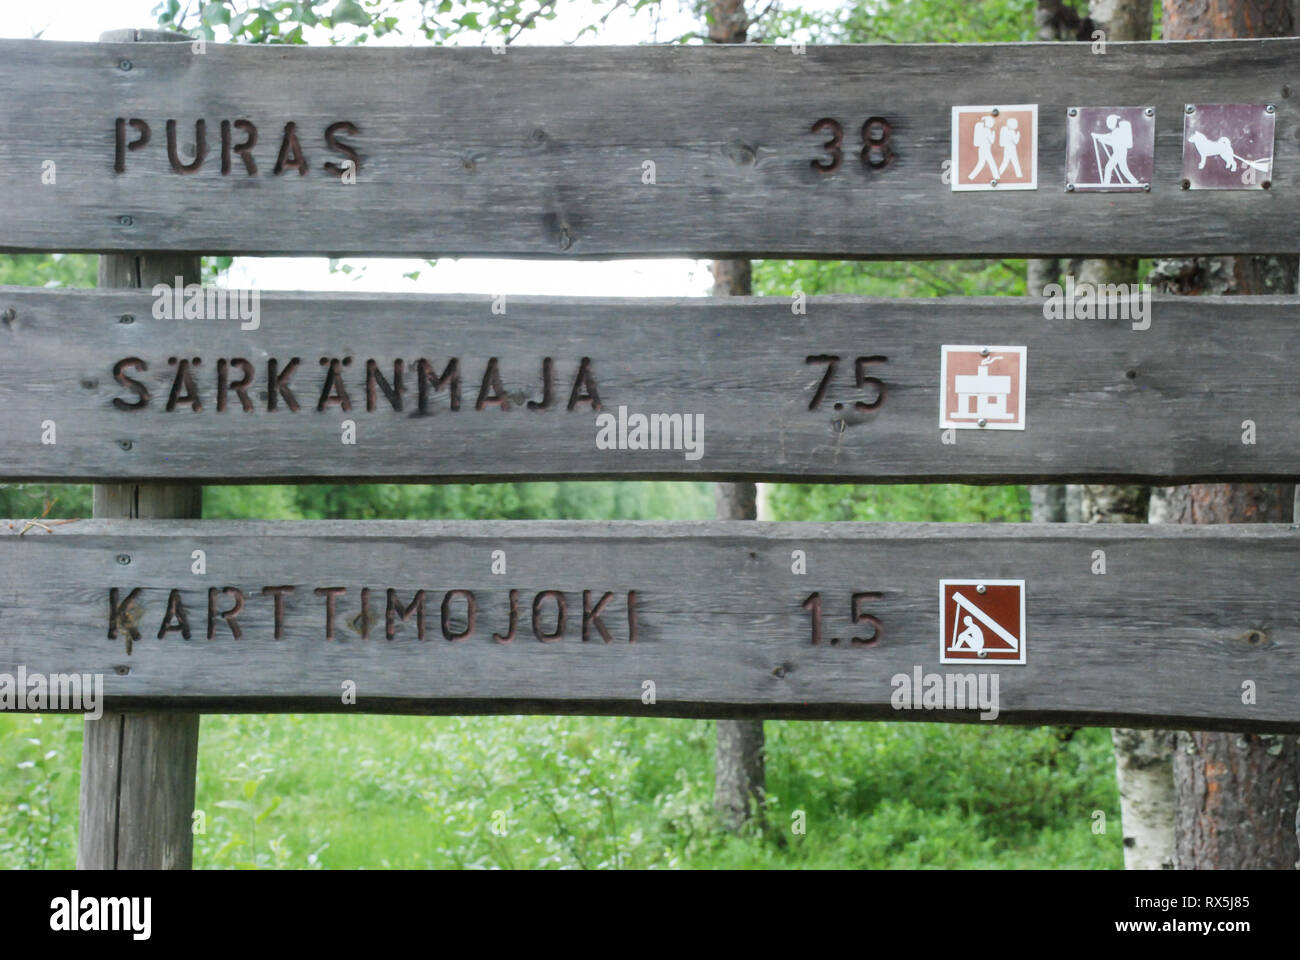 Zeichen oder waymarkers für Spaziergänge, Wanderungen, Ski und Hundeschlitten Trails in der Taiga forest im Norden Finnlands Stockfoto